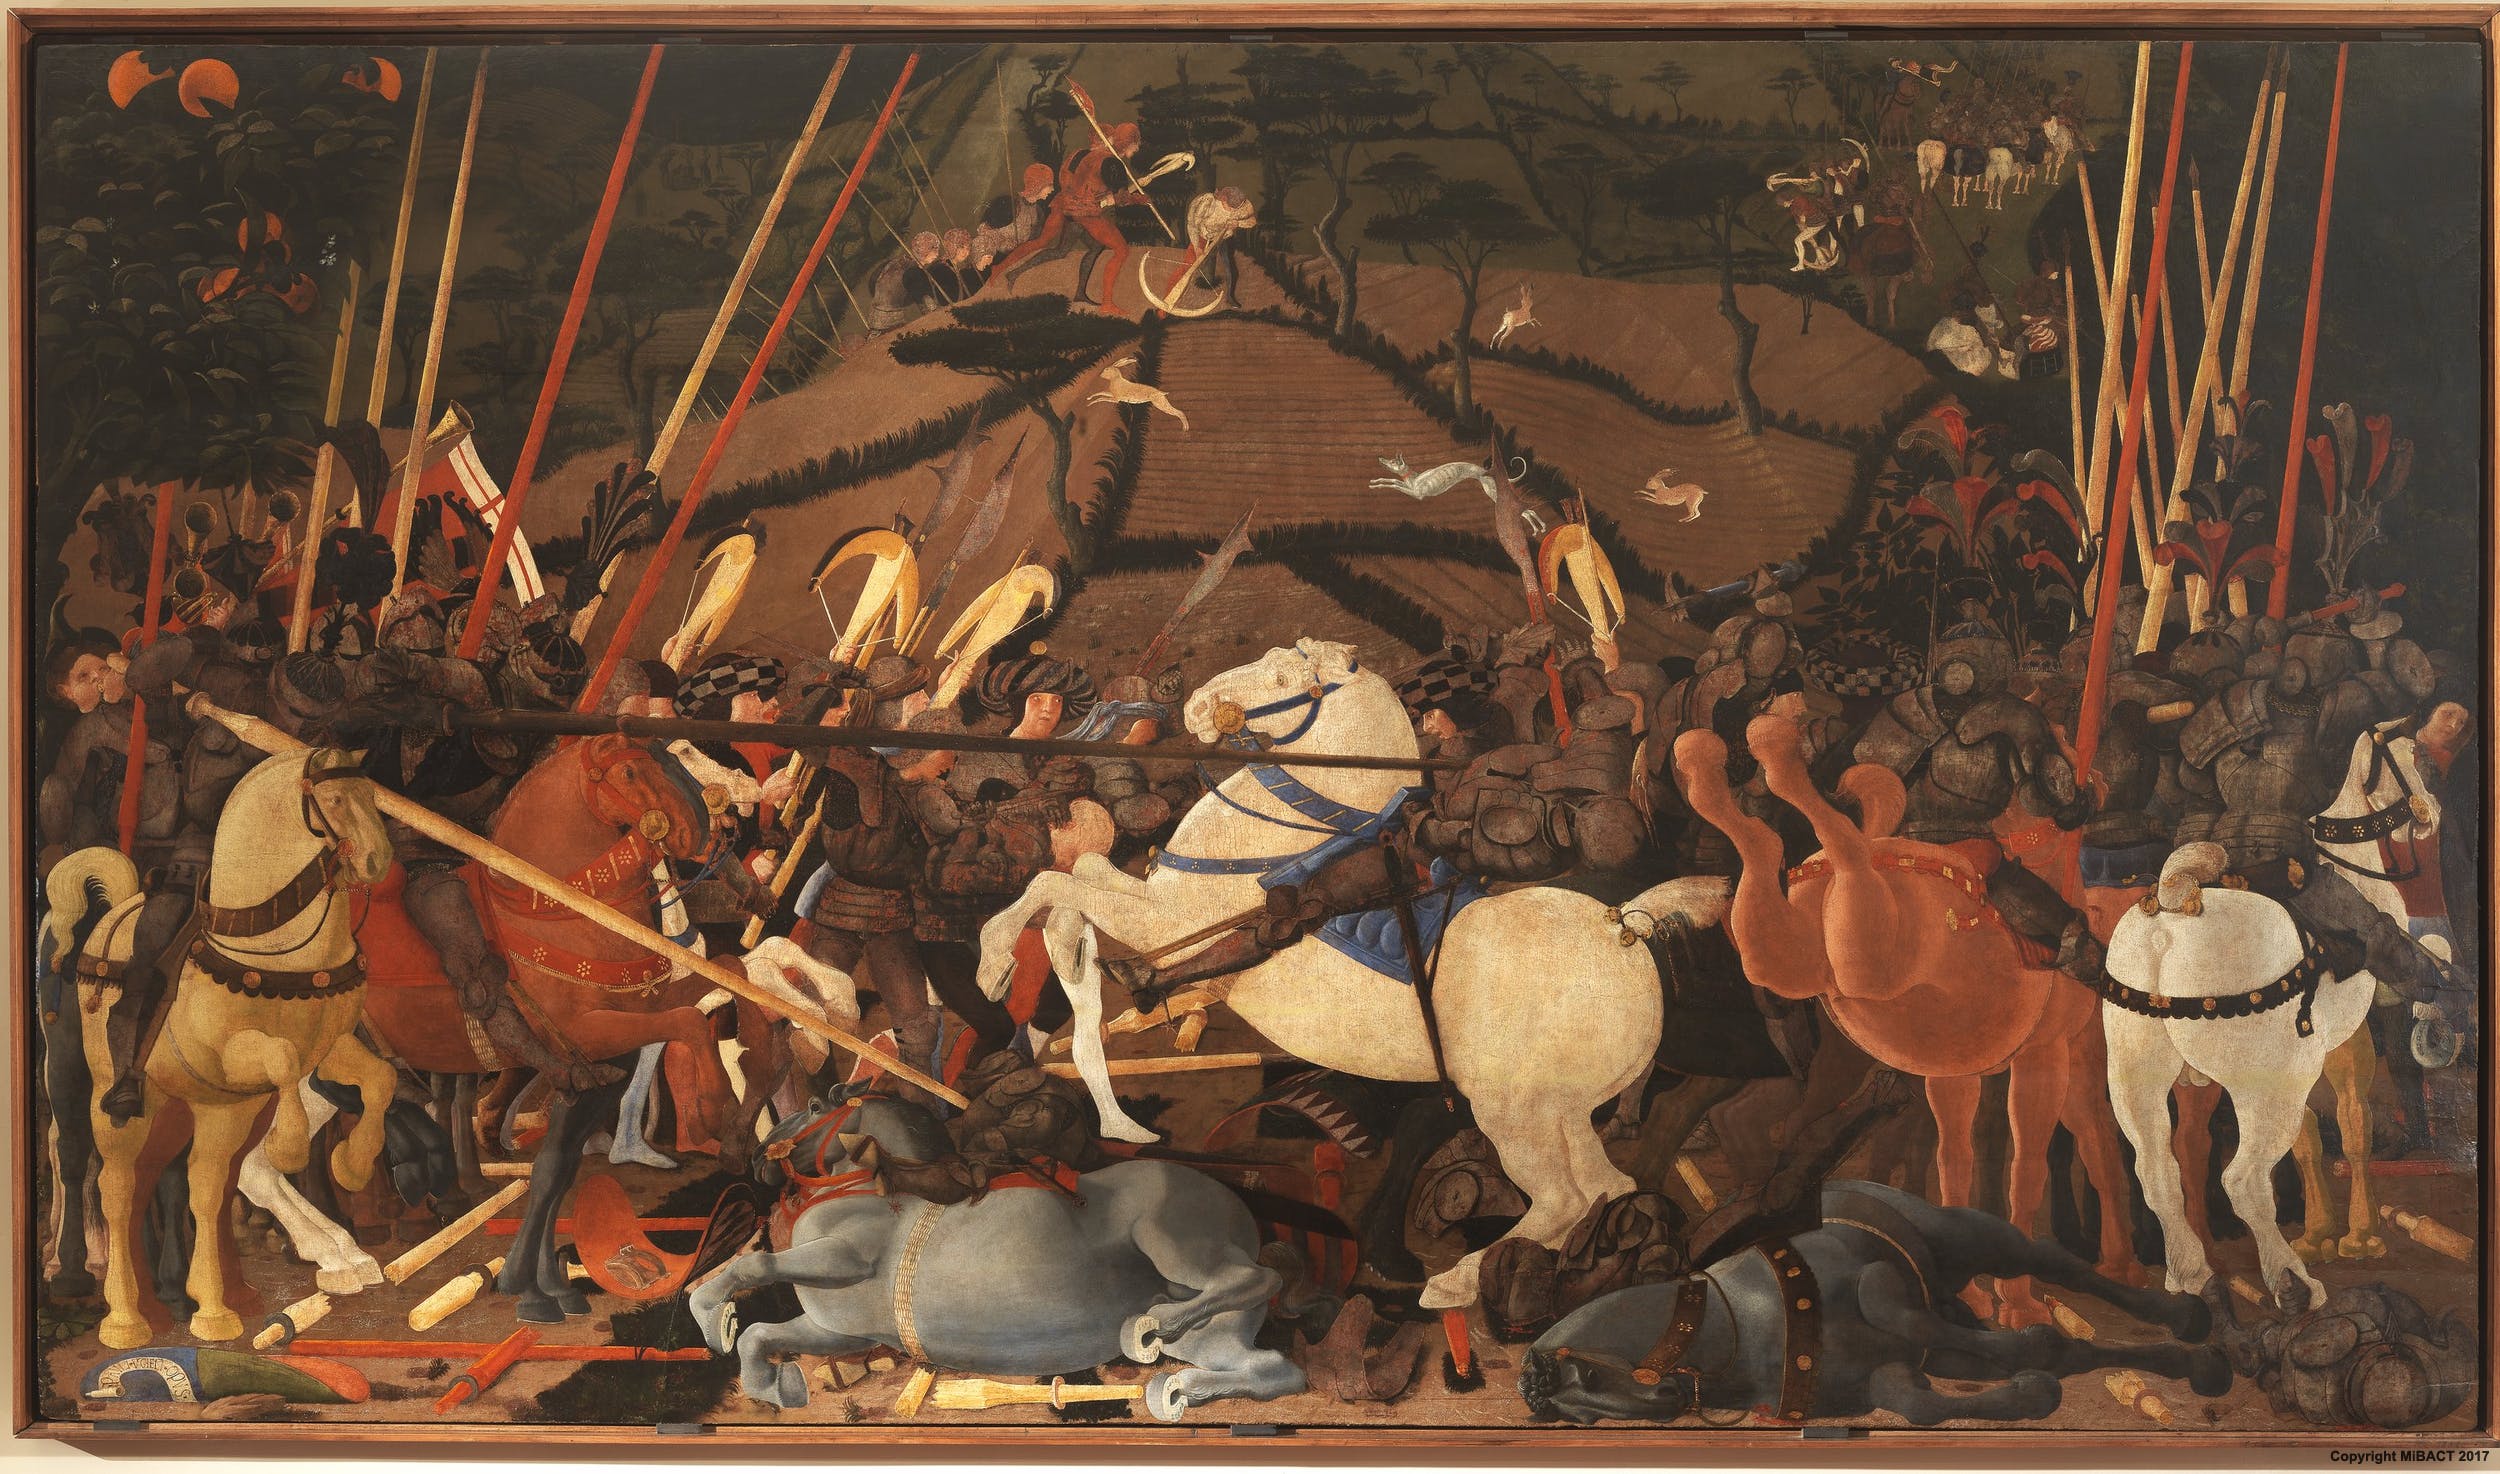 Paolo Uccello, La Battaglia di San Romano, Il disarcionamento di Bernardino della Carda (1438-1440 circa; tempera su tavola, 182 x 323 cm; Firenze, Gallerie degli Uffizi)